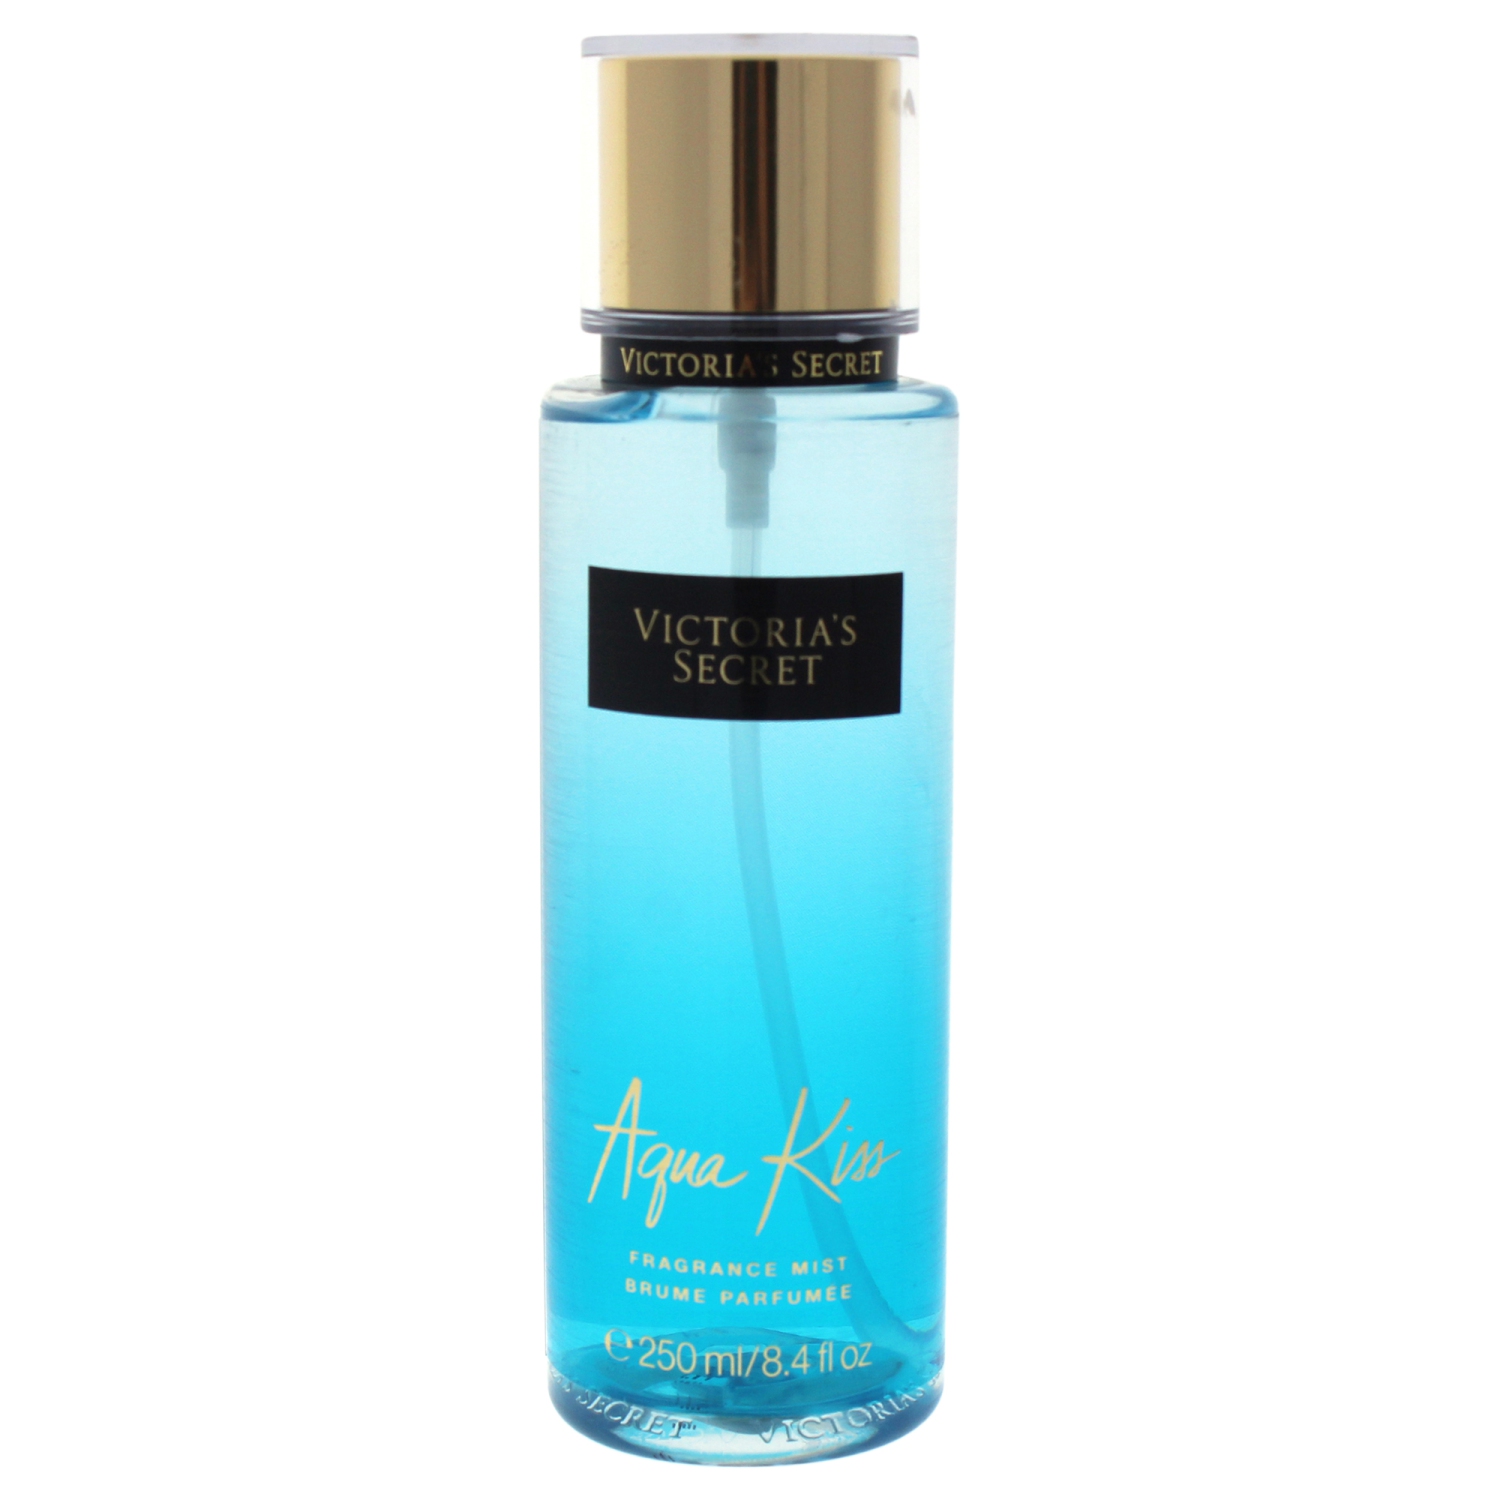 Aqua Kiss by Victorias Secret for Women - 8.4 oz Fragrance Mist